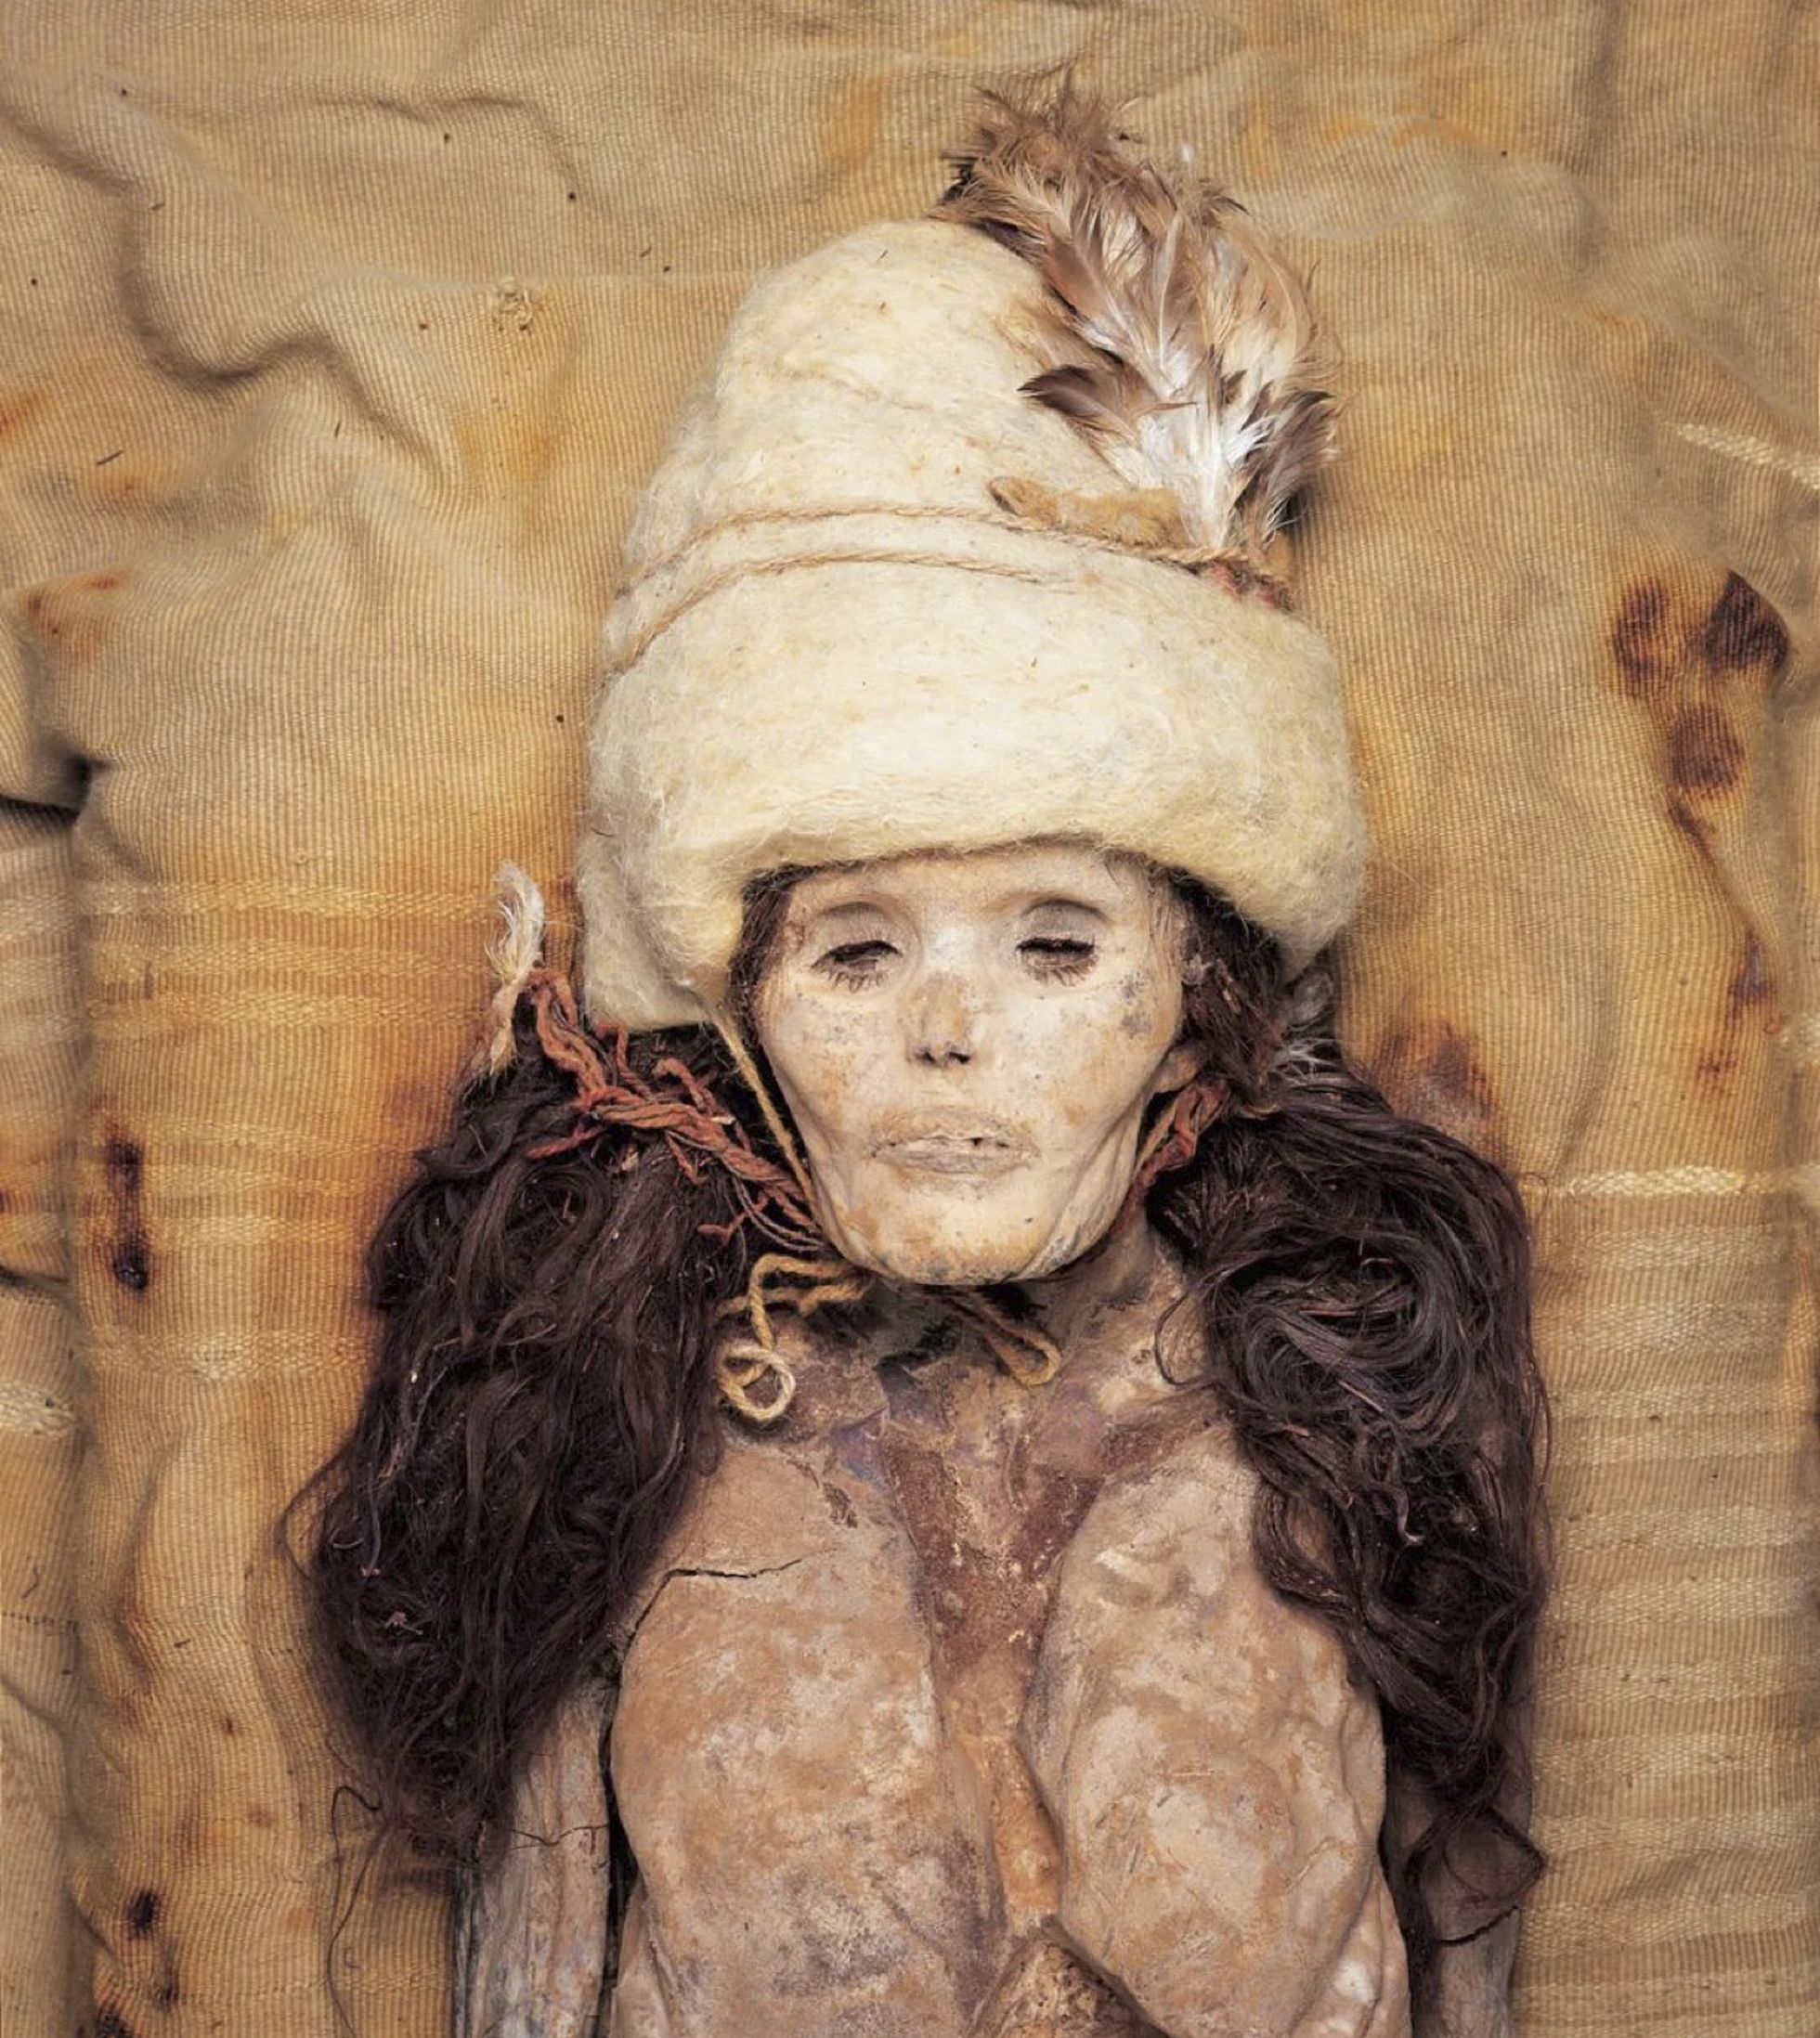 Las extrañas momias con aspecto moderno tienen mucho colorido.